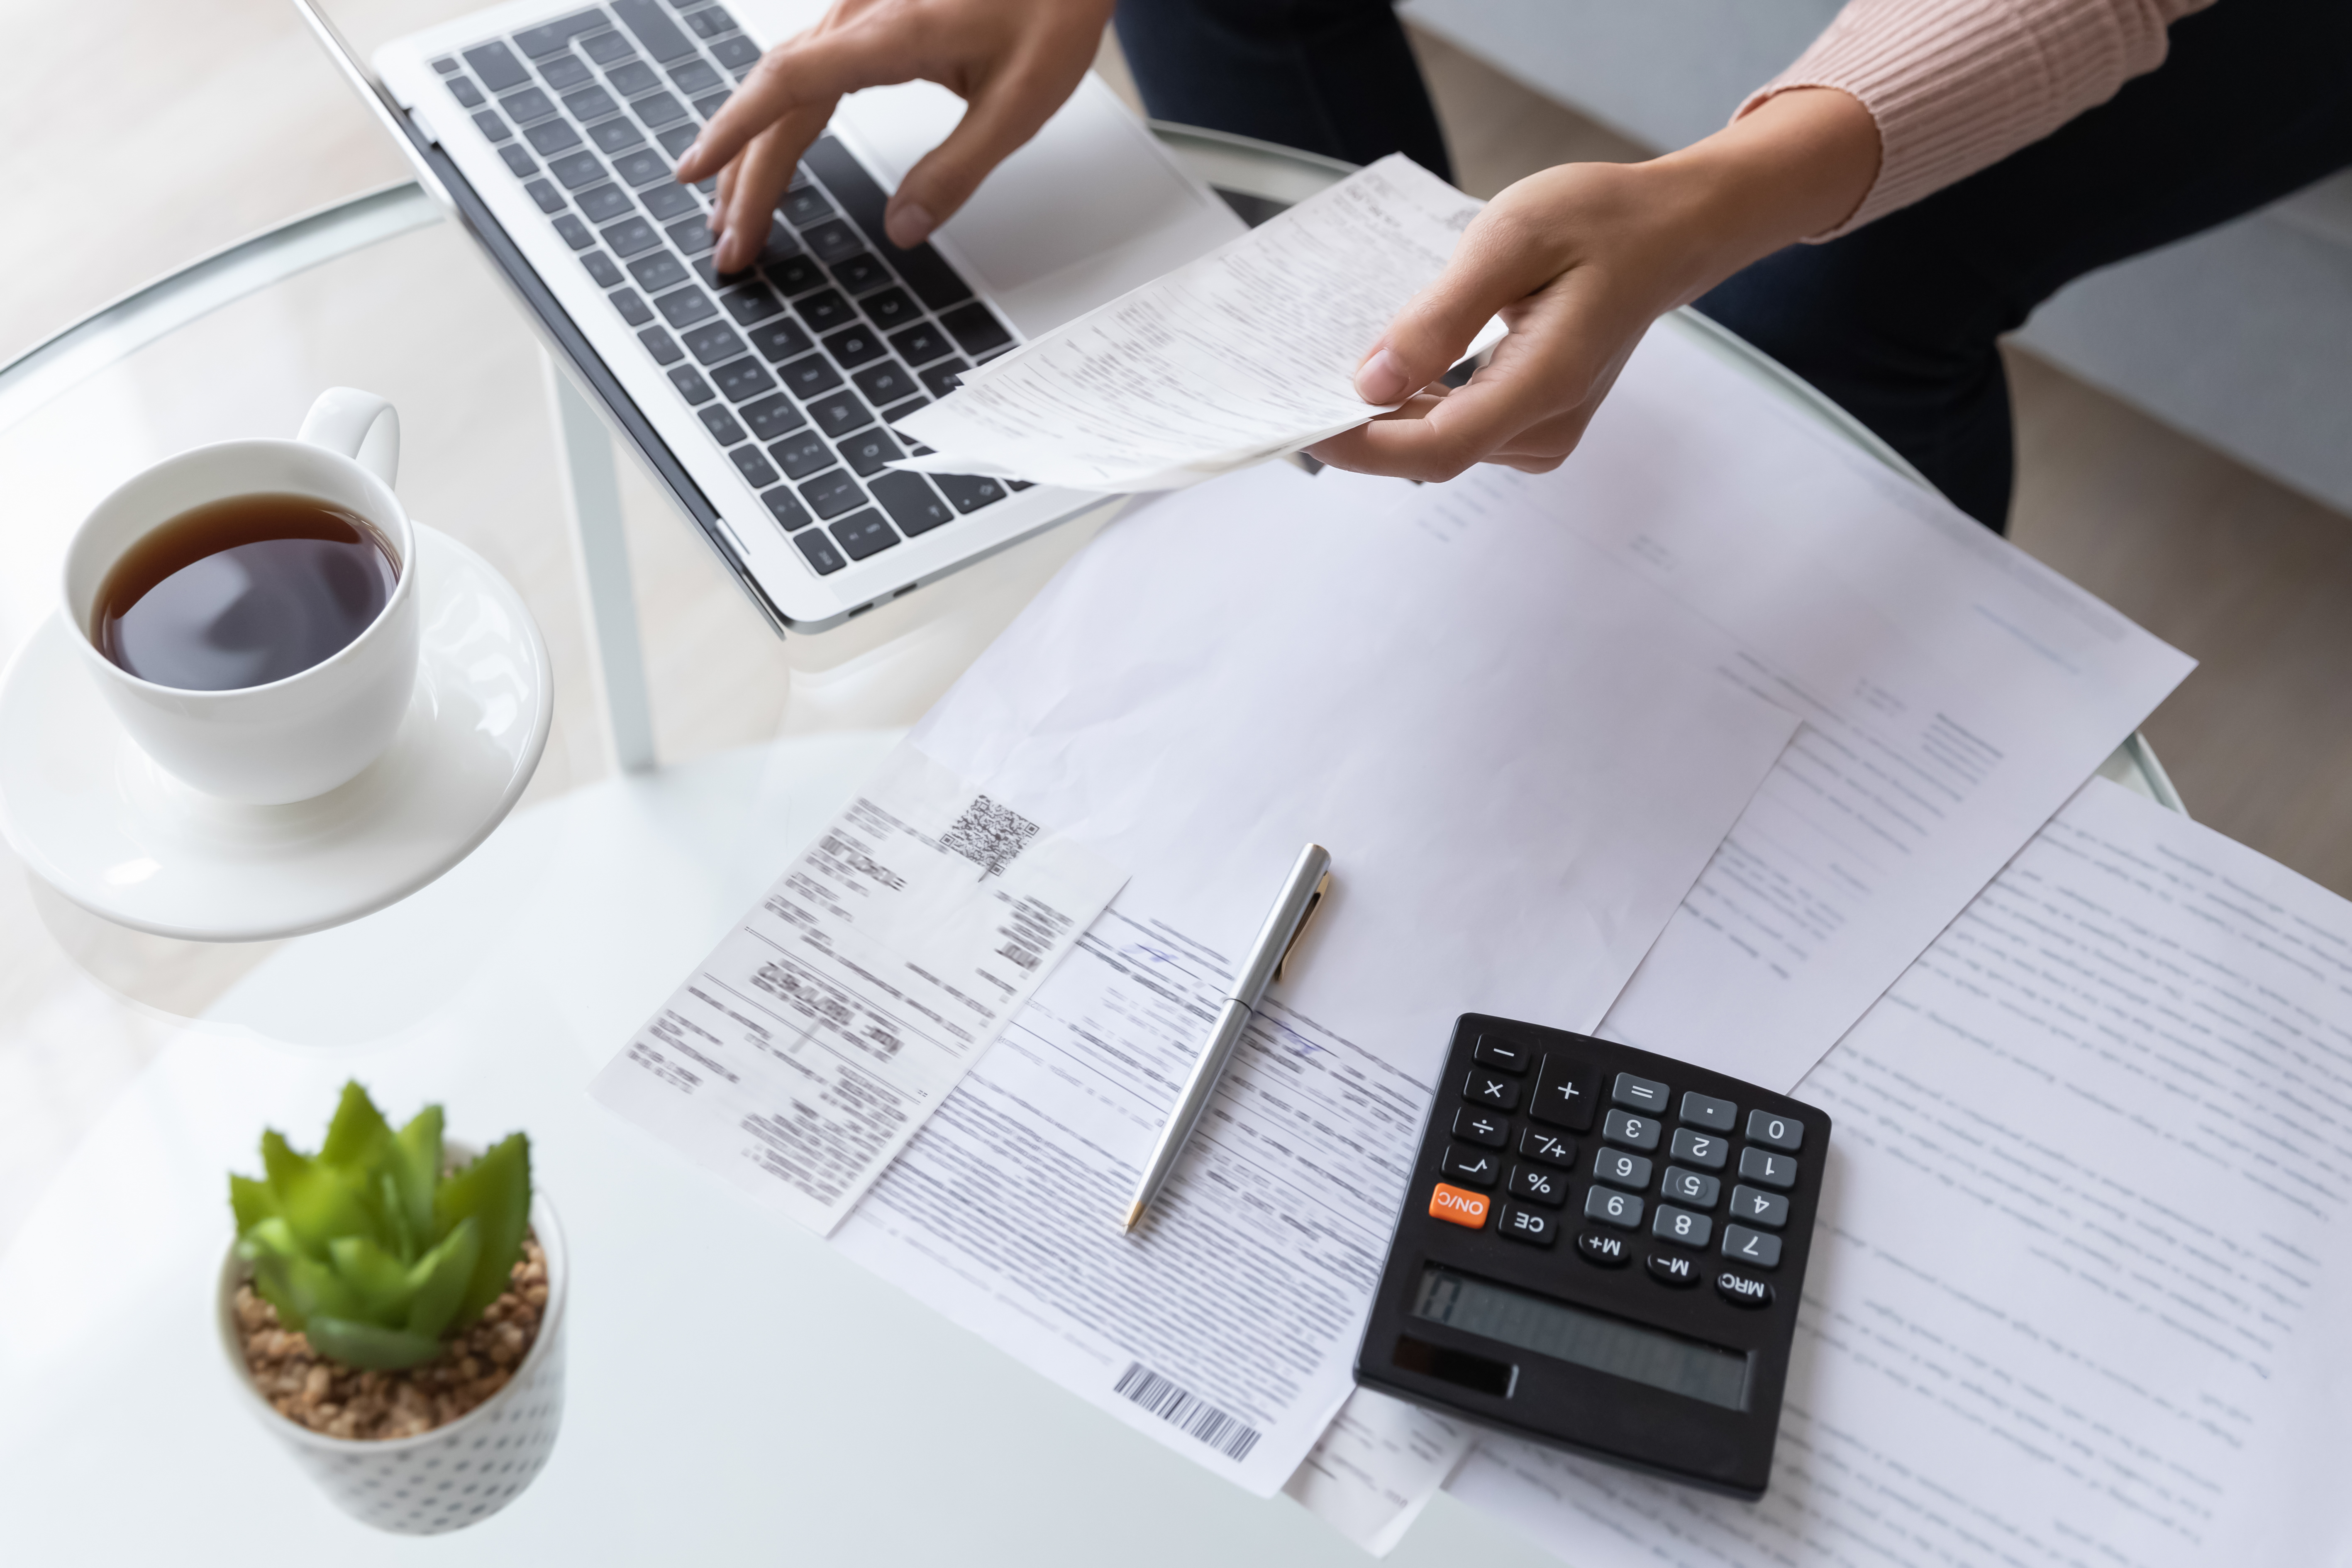 Foto en primer plano de una persona revisando registros financieros | Fuente: Shutterstock